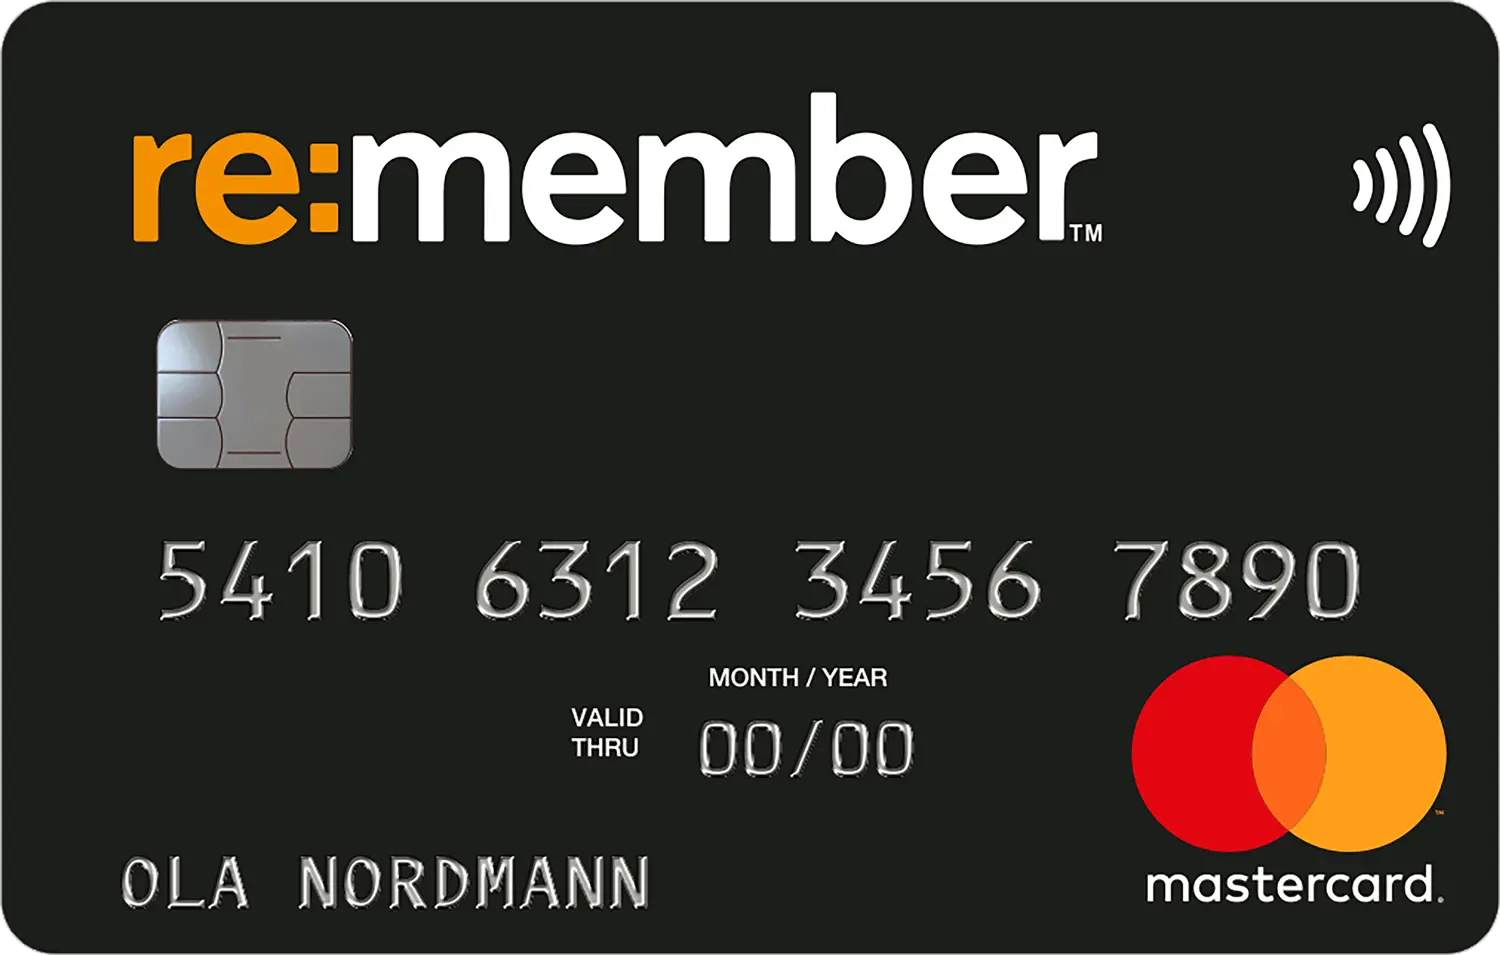 Re:member credit card